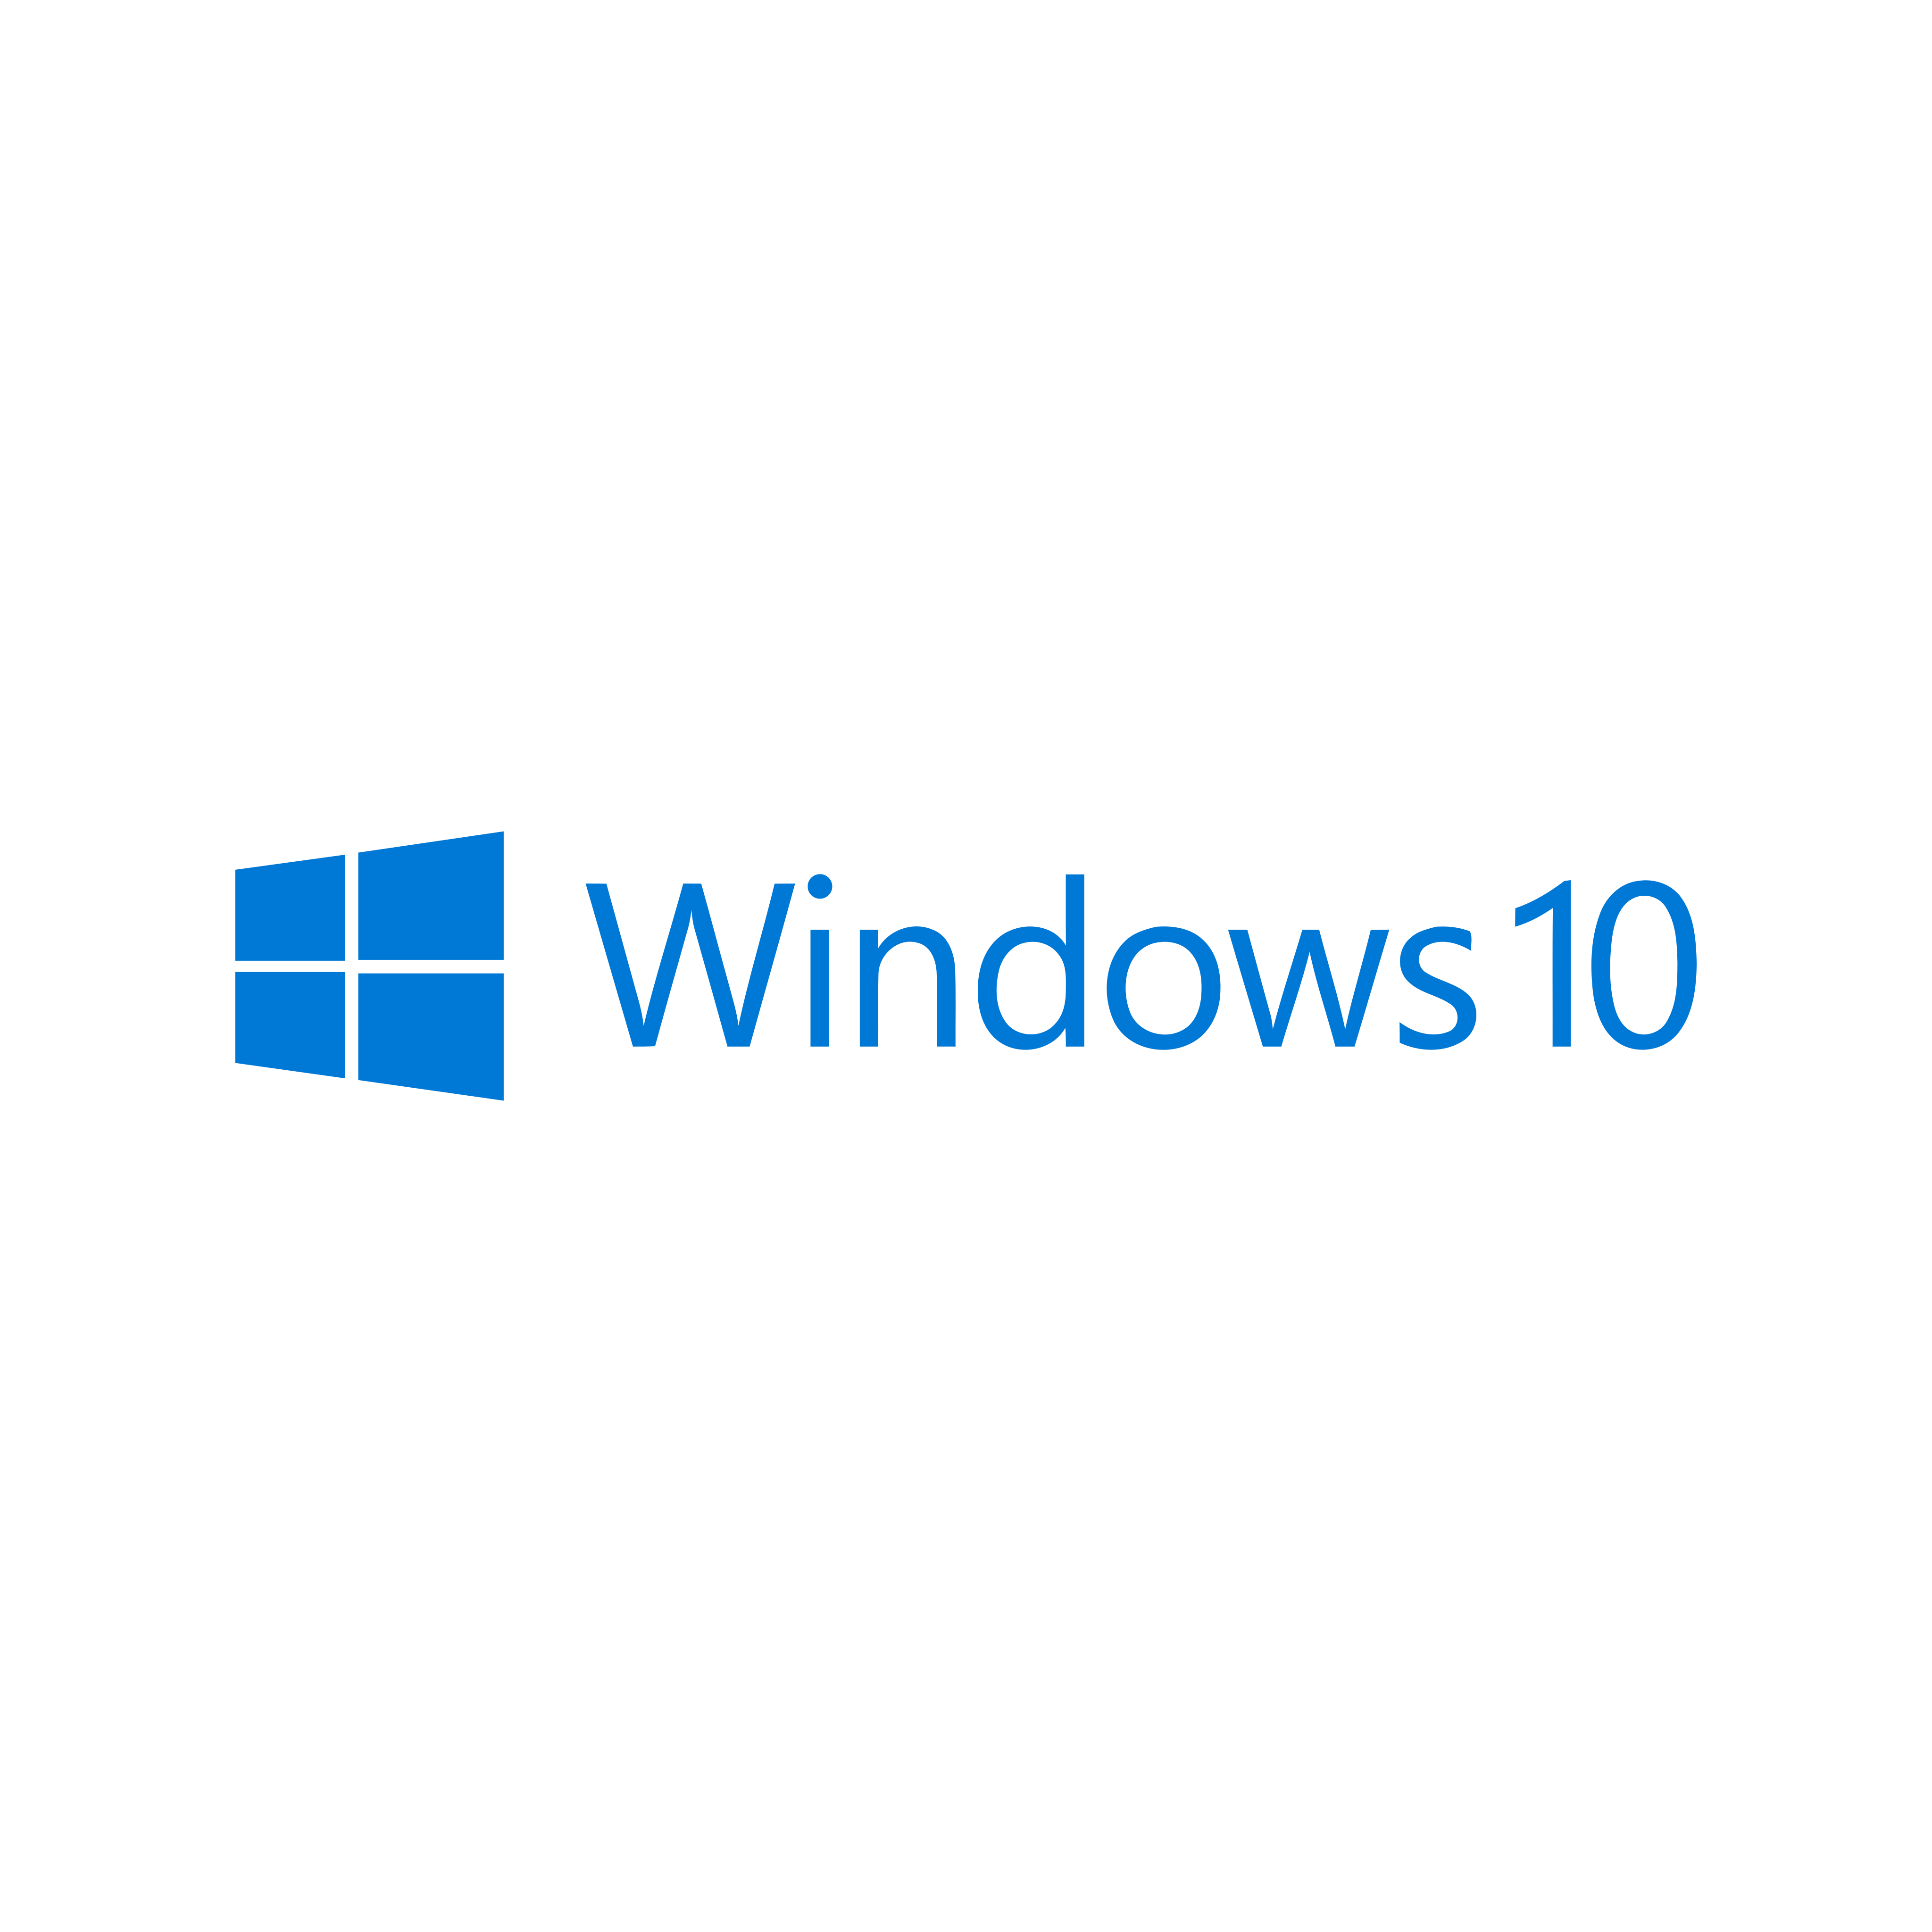 Windows 10 Logo PNG.